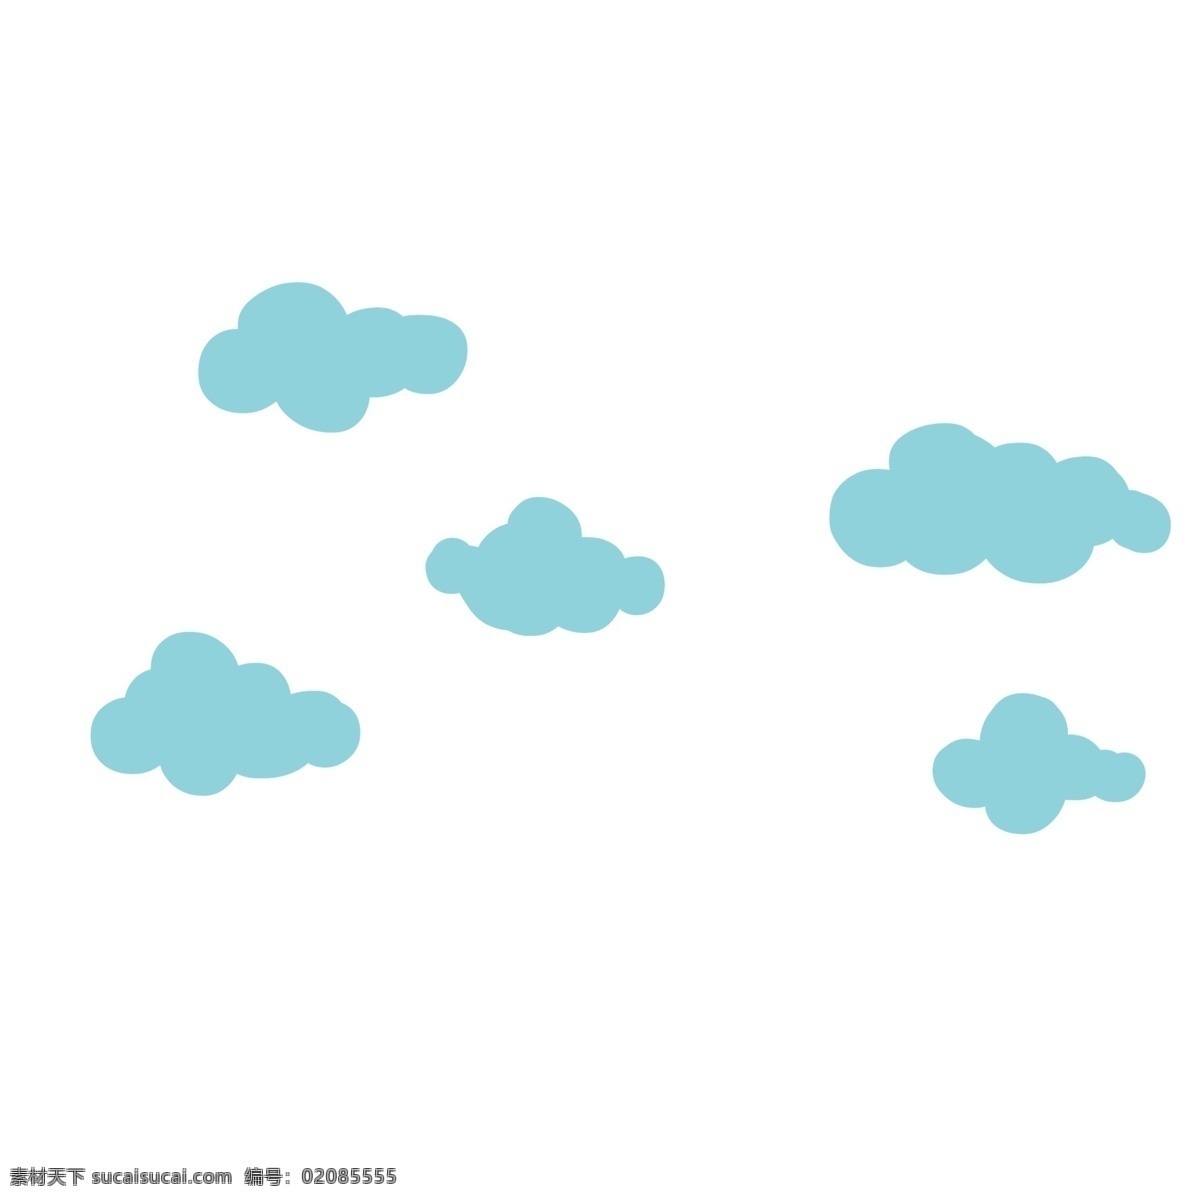 蓝色漂浮云朵 蓝色云朵 漂浮云彩 天空 浮云 装饰图案 多云